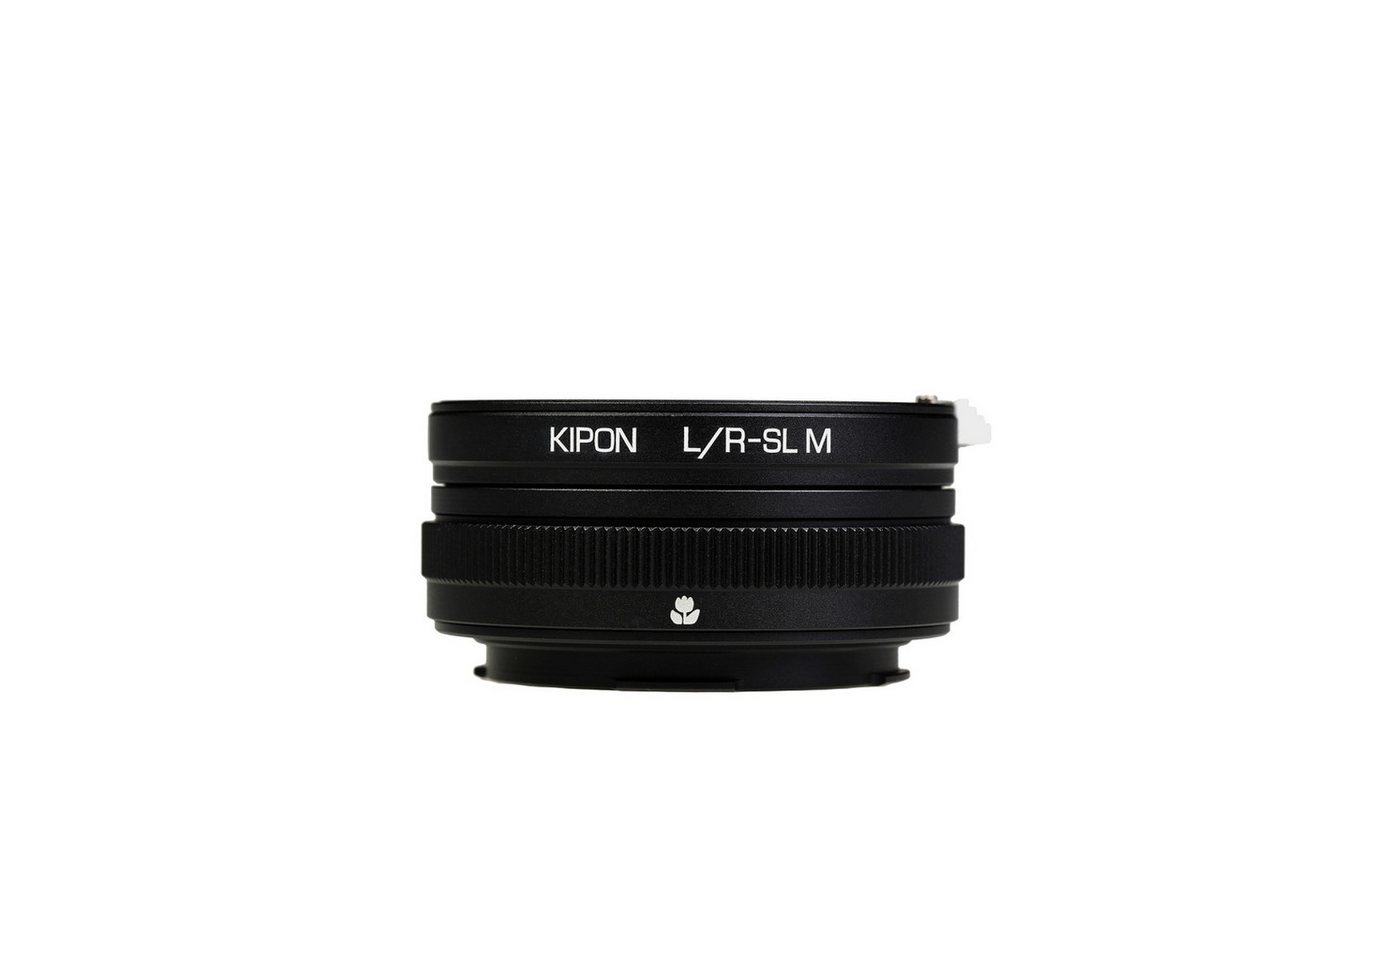 Kipon Makro Adapter für Leica R auf Leica SL Objektiveadapter von Kipon